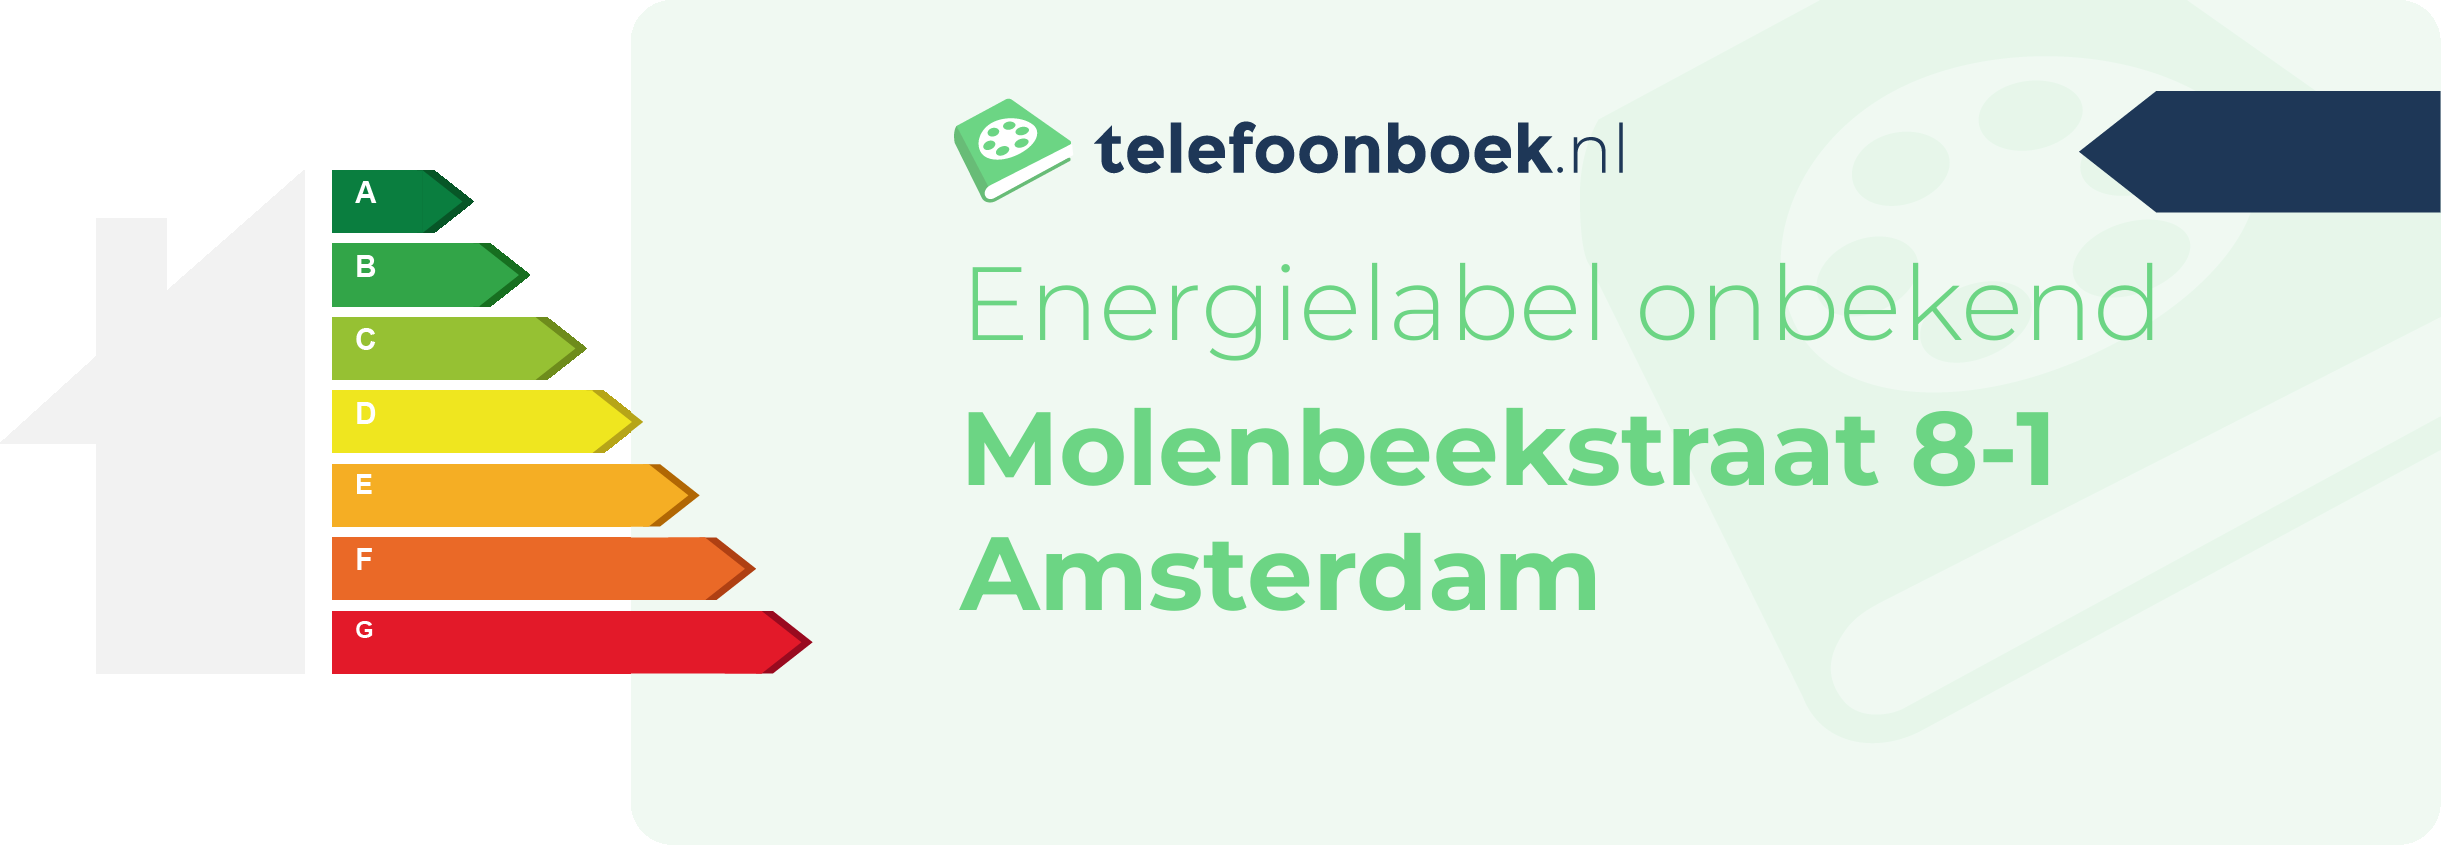 Energielabel Molenbeekstraat 8-1 Amsterdam